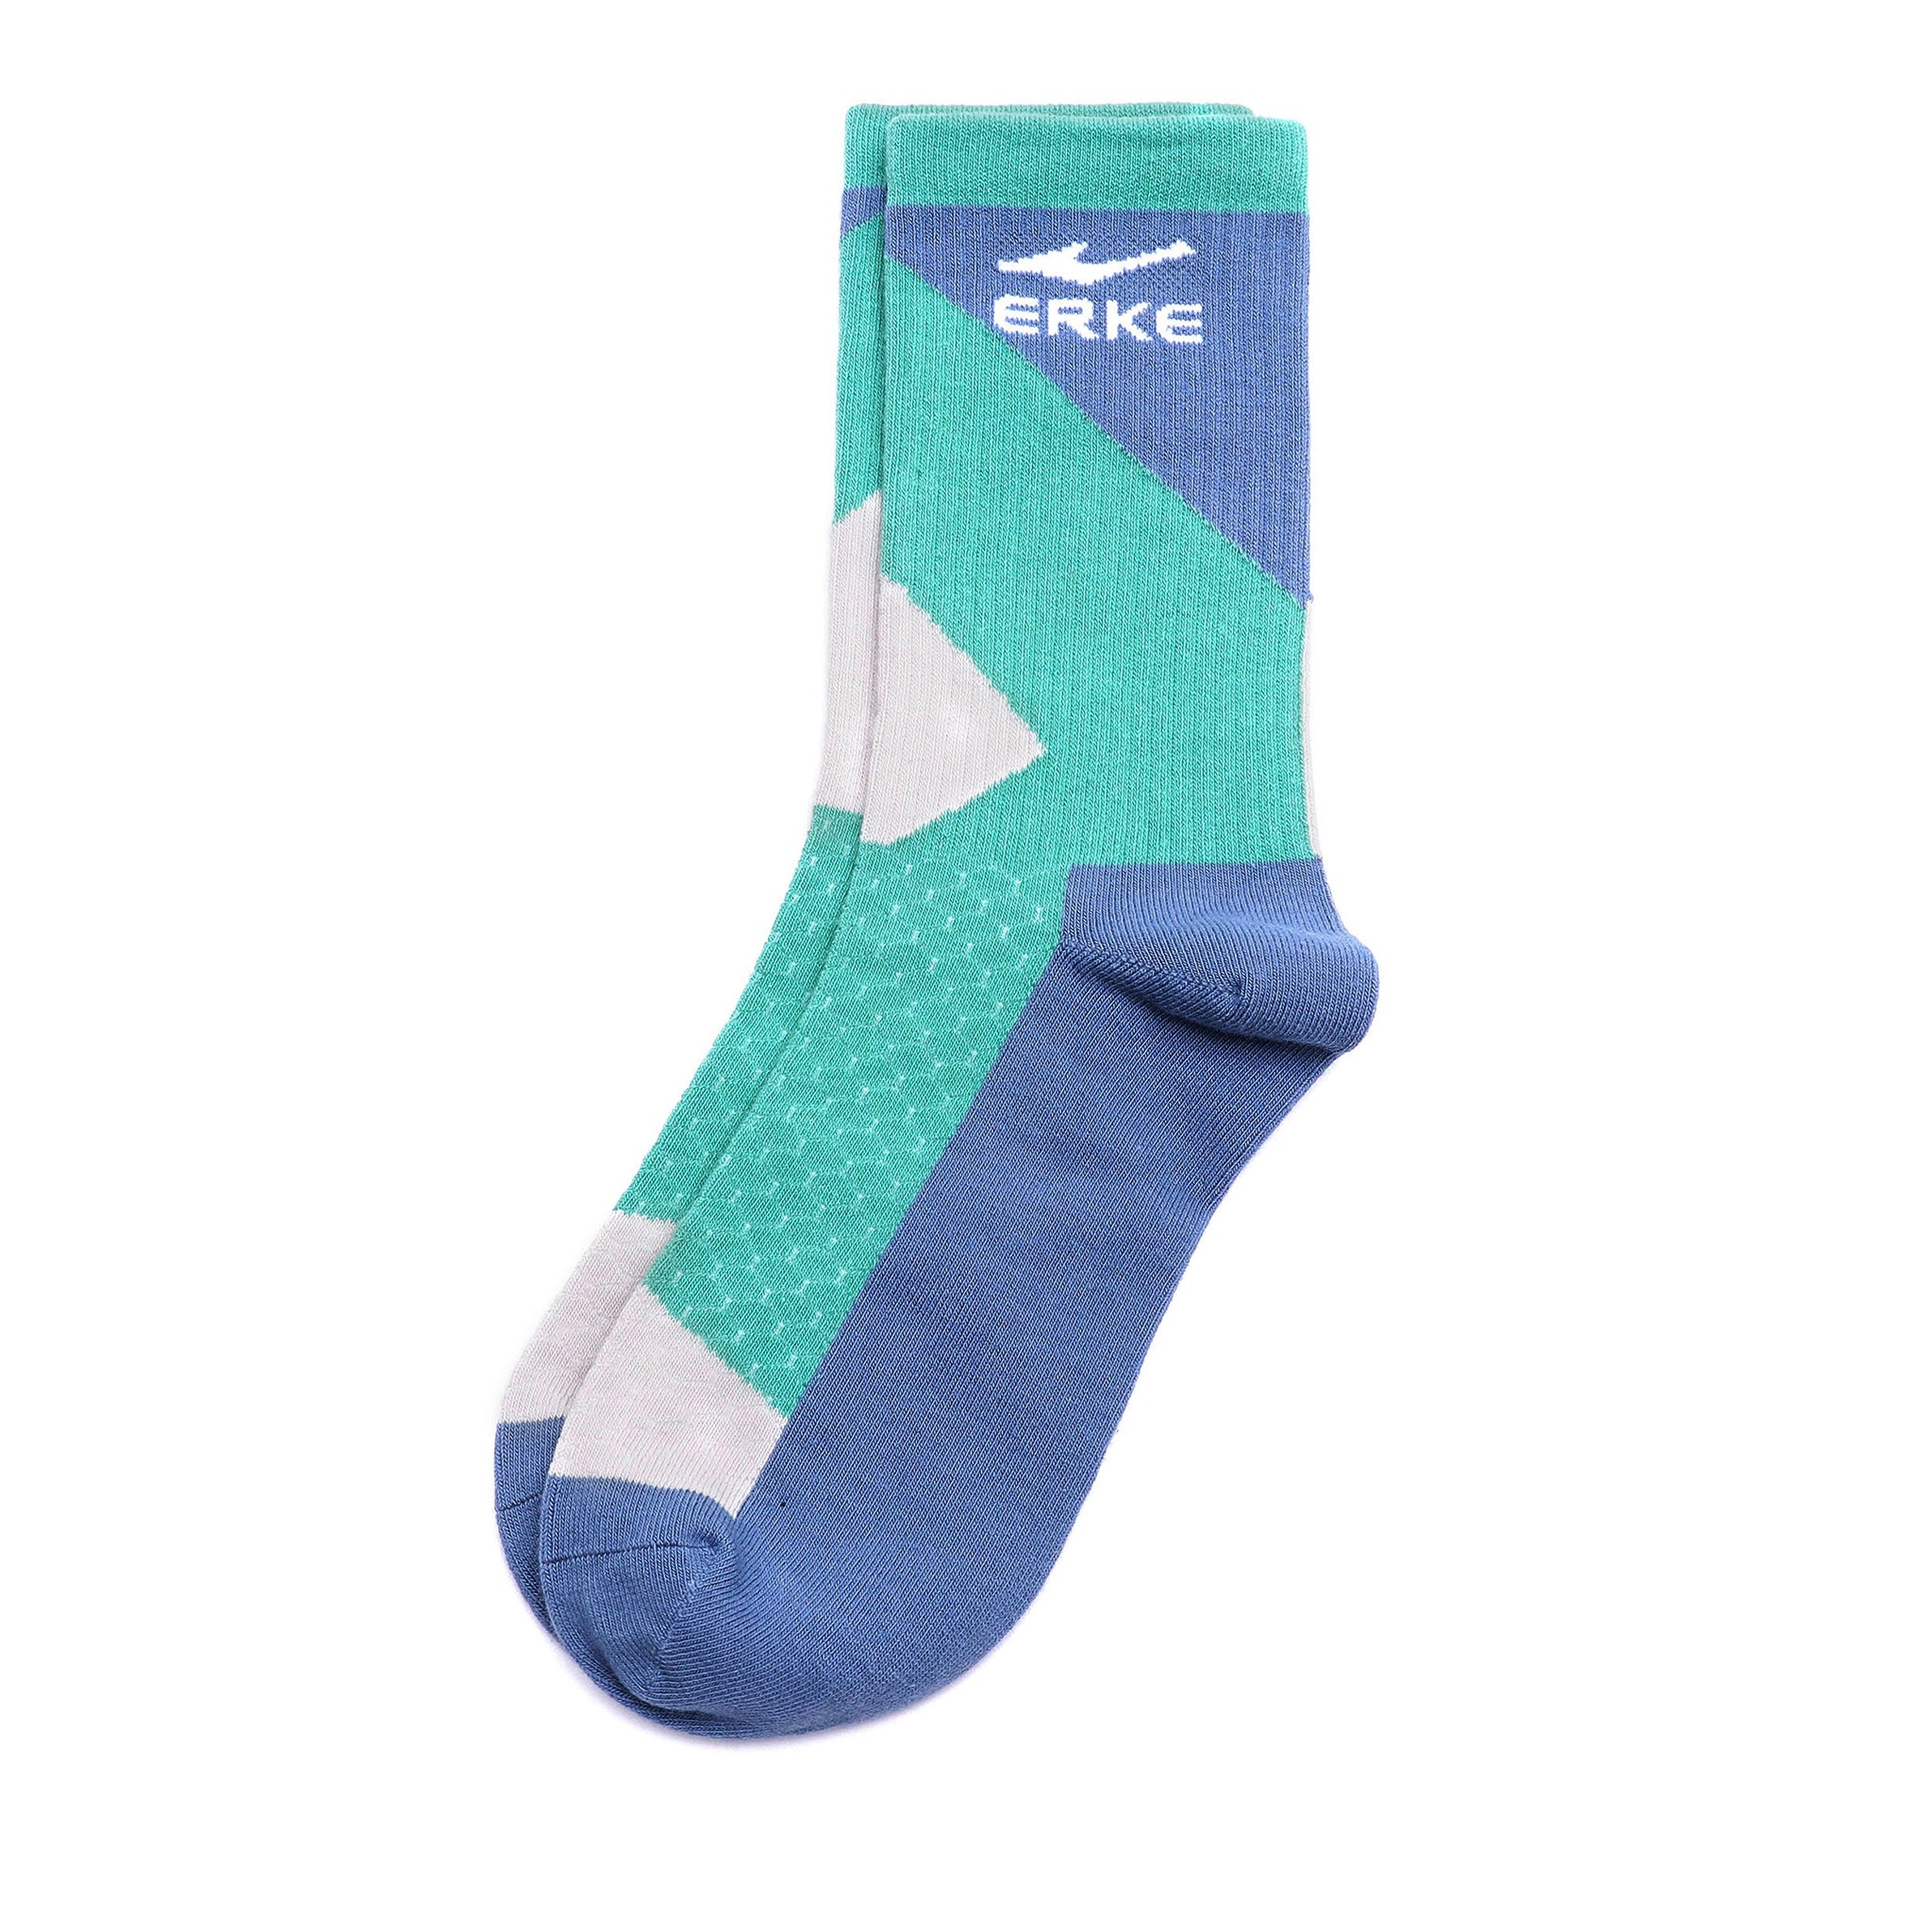 Spor Çorap - Açık Yeşil/Koyu Pus Mavisi/Açık Gri image